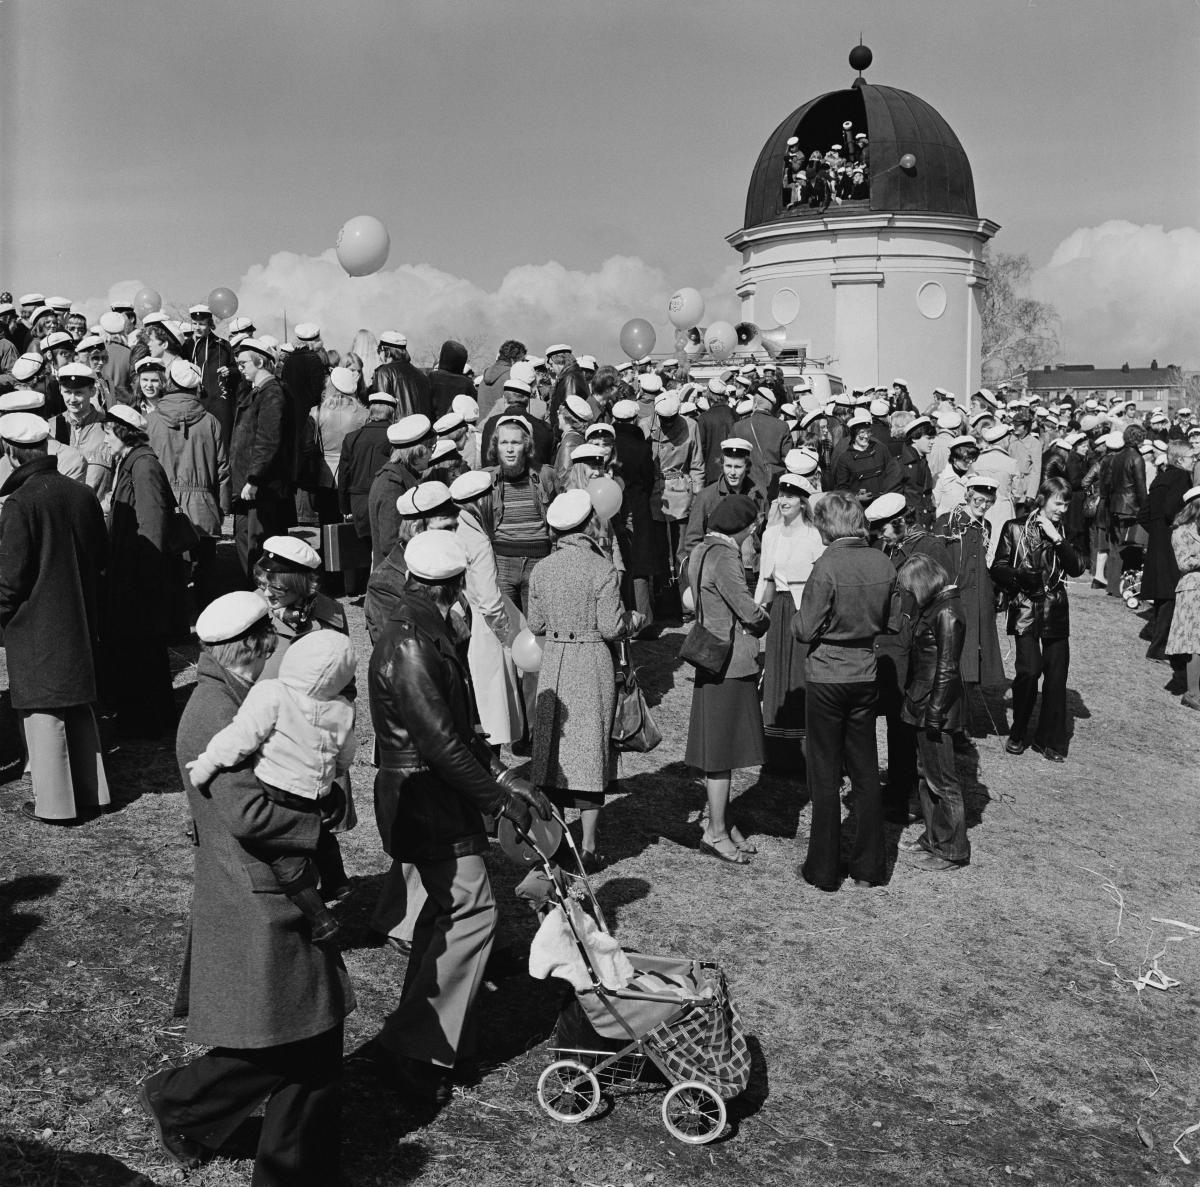 Suuri joukko ylioppilaslakkeihin pukeutuneita ihmisiä on kokoontunut juhlimaan Kaivopuistoon tähtitornin edustalle. Tähtitornin luukku on auki ja sen kupolissa on myös juhlijoita.